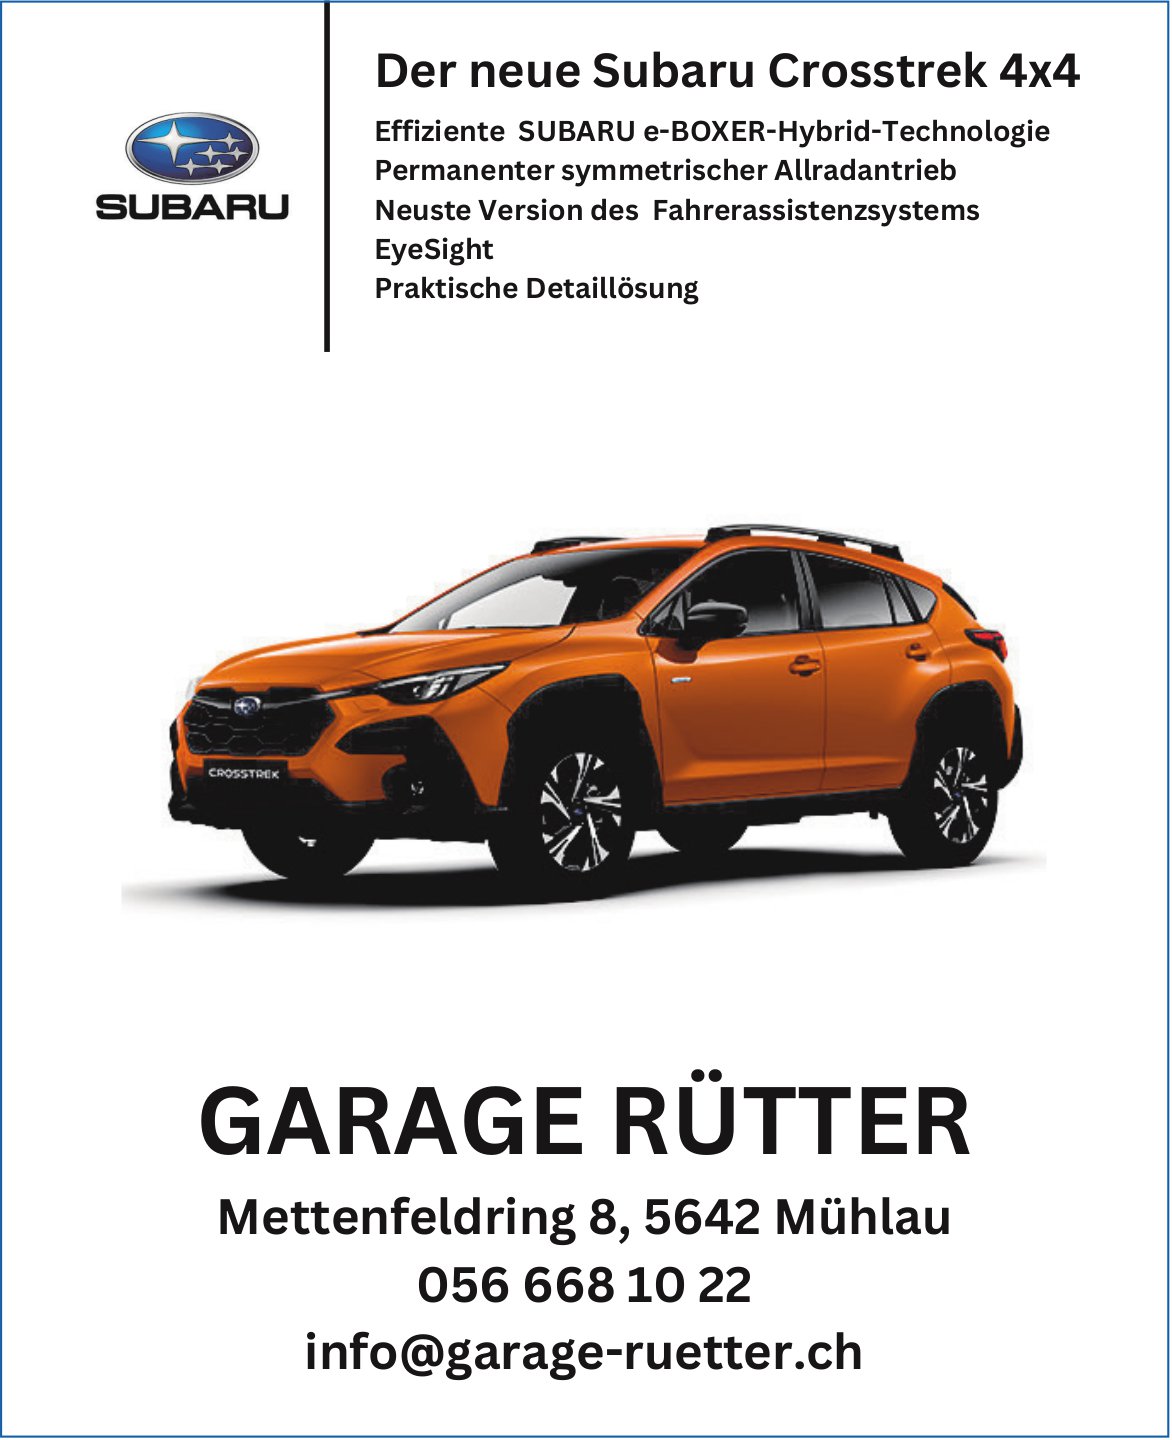 Garage Rütter, Mühlau - Der neue Subaru Crosstrek 4x4